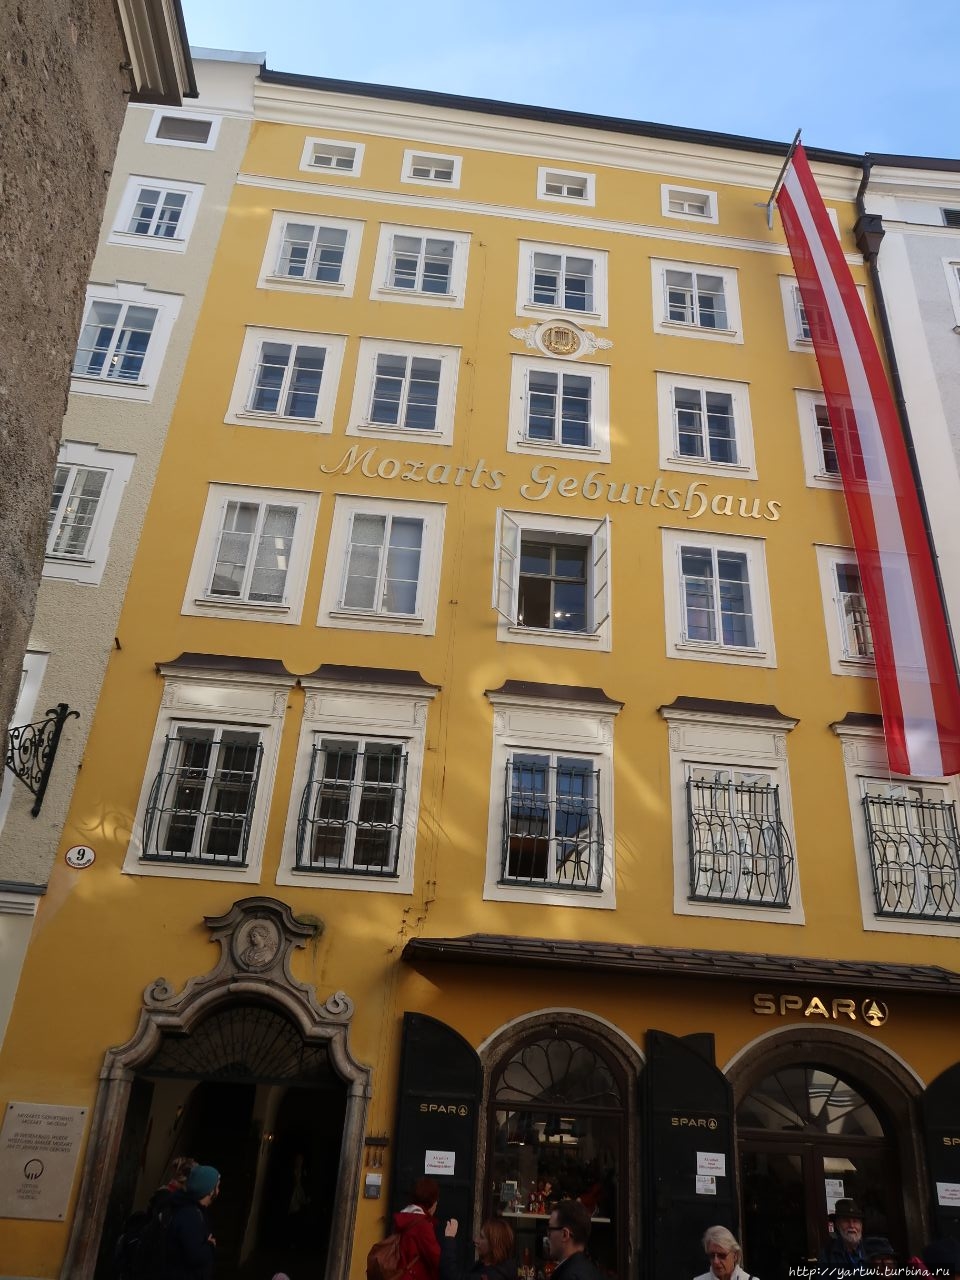 Дом, где родился Моцарт. Кстати, в доме находится продовольственный магазин с очень демократическими ценами. Зальцбург, Австрия